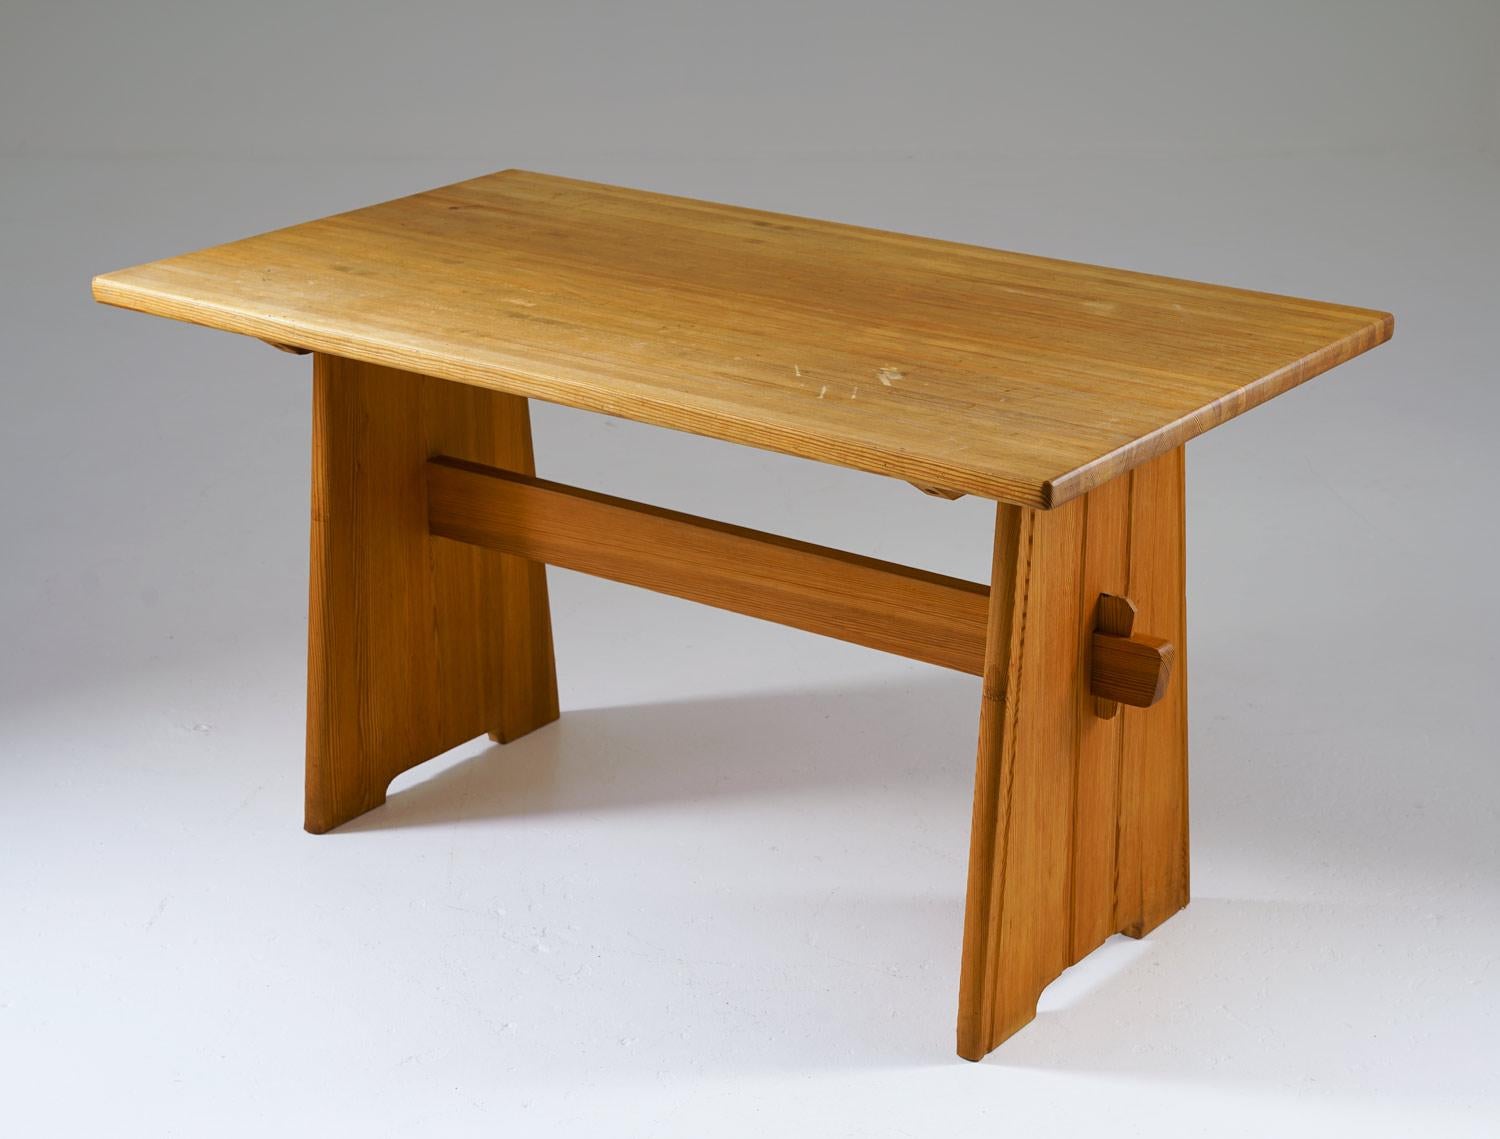 Une table de salle à manger charmante et robuste, fabriquée en pin et fabriquée en Suède dans les années 1950, probablement conçue par Göran Malmvall pour le fabricant de meubles estimé Svensk Fur. Cette table évoque le style très recherché des